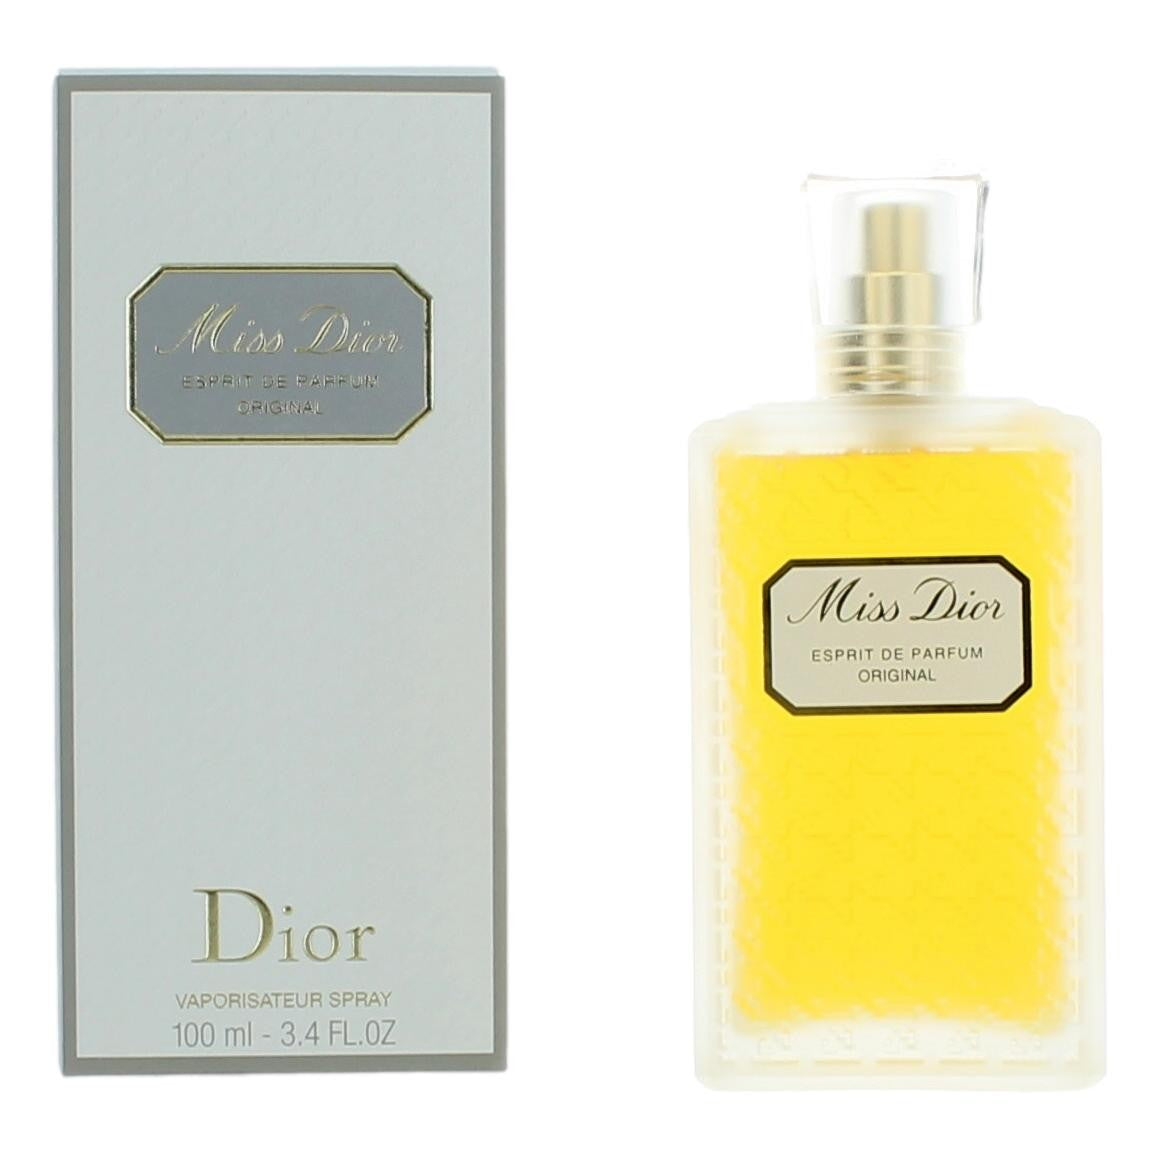 Miss Dior by Christian Dior, 3.4 oz Esprit De Parfum Spray for Women